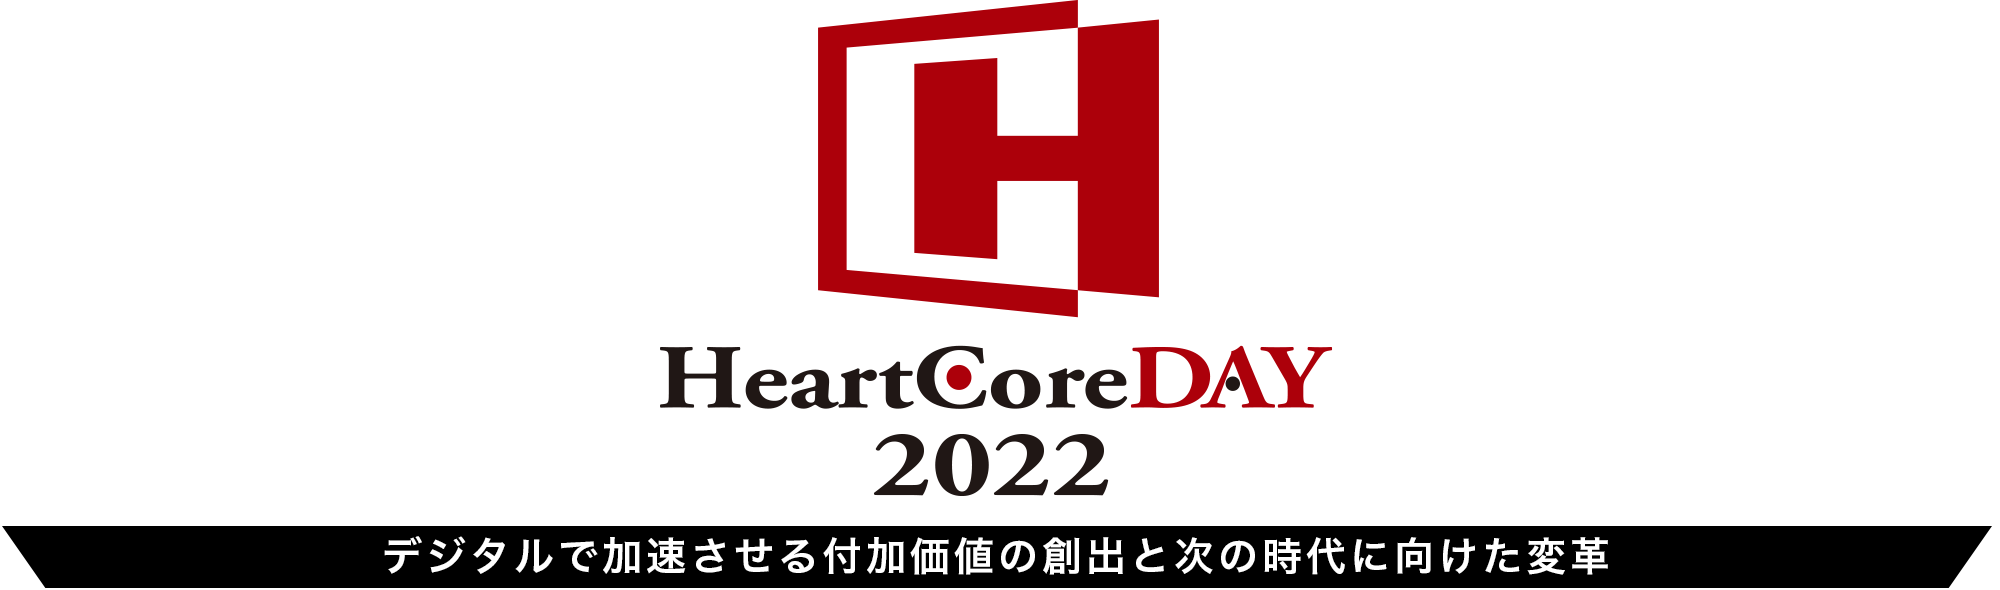 はーとこあでい　ハートコアディ HeartCoreDAY 2022 デジタルで加速させる付加価値の創出と次の時代に向けた変革​